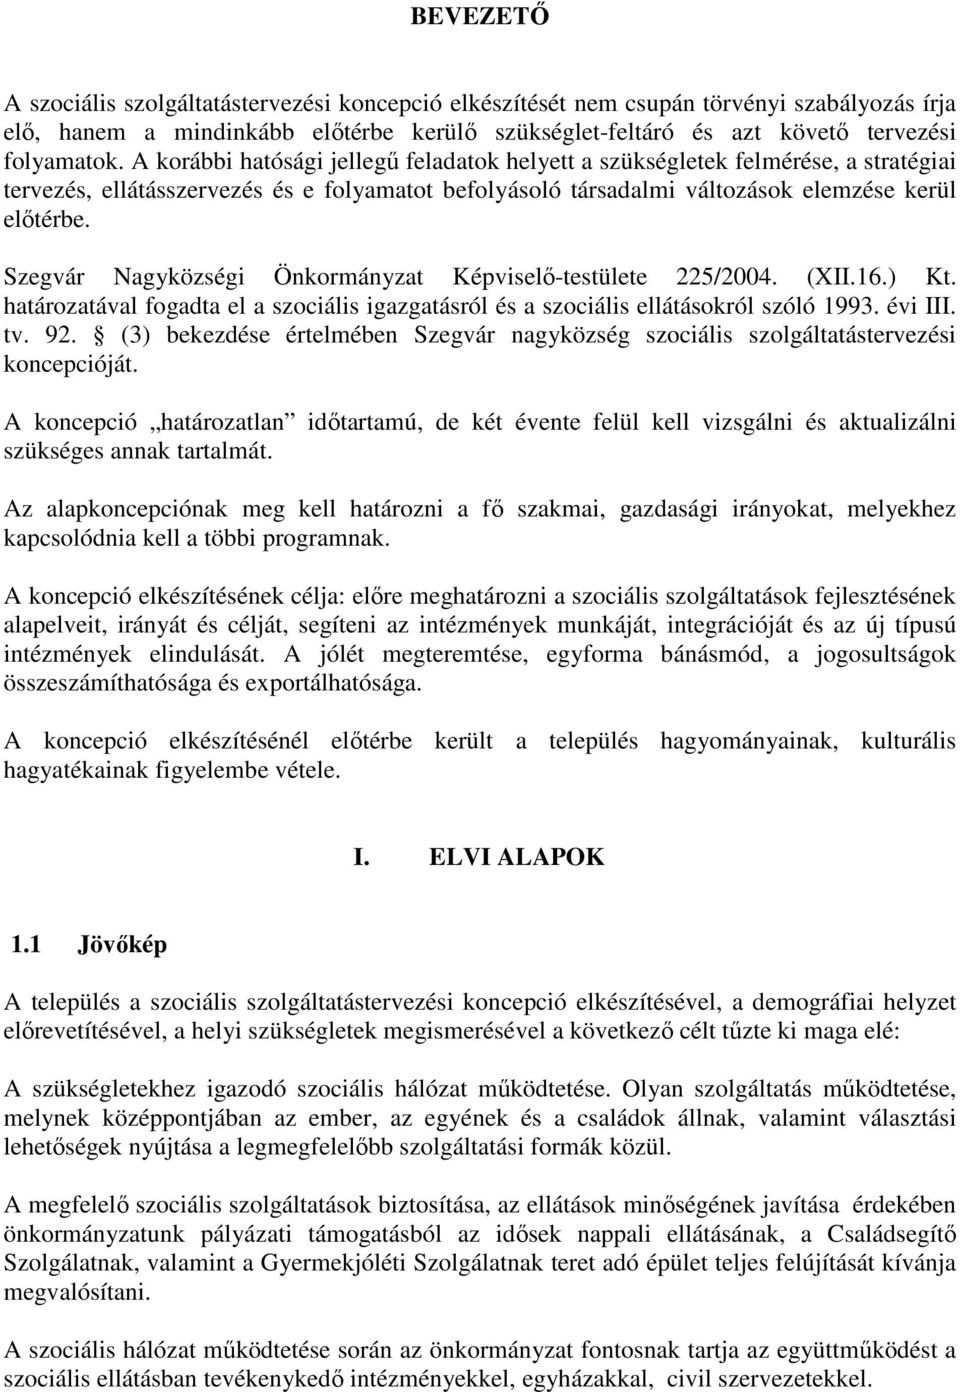 Szegvár Nagyközségi Önkormányzat Képviselı-testülete 225/2004. (XII.16.) Kt. határozatával fogadta el a szociális igazgatásról és a szociális ellátásokról szóló 1993. évi III. tv. 92.